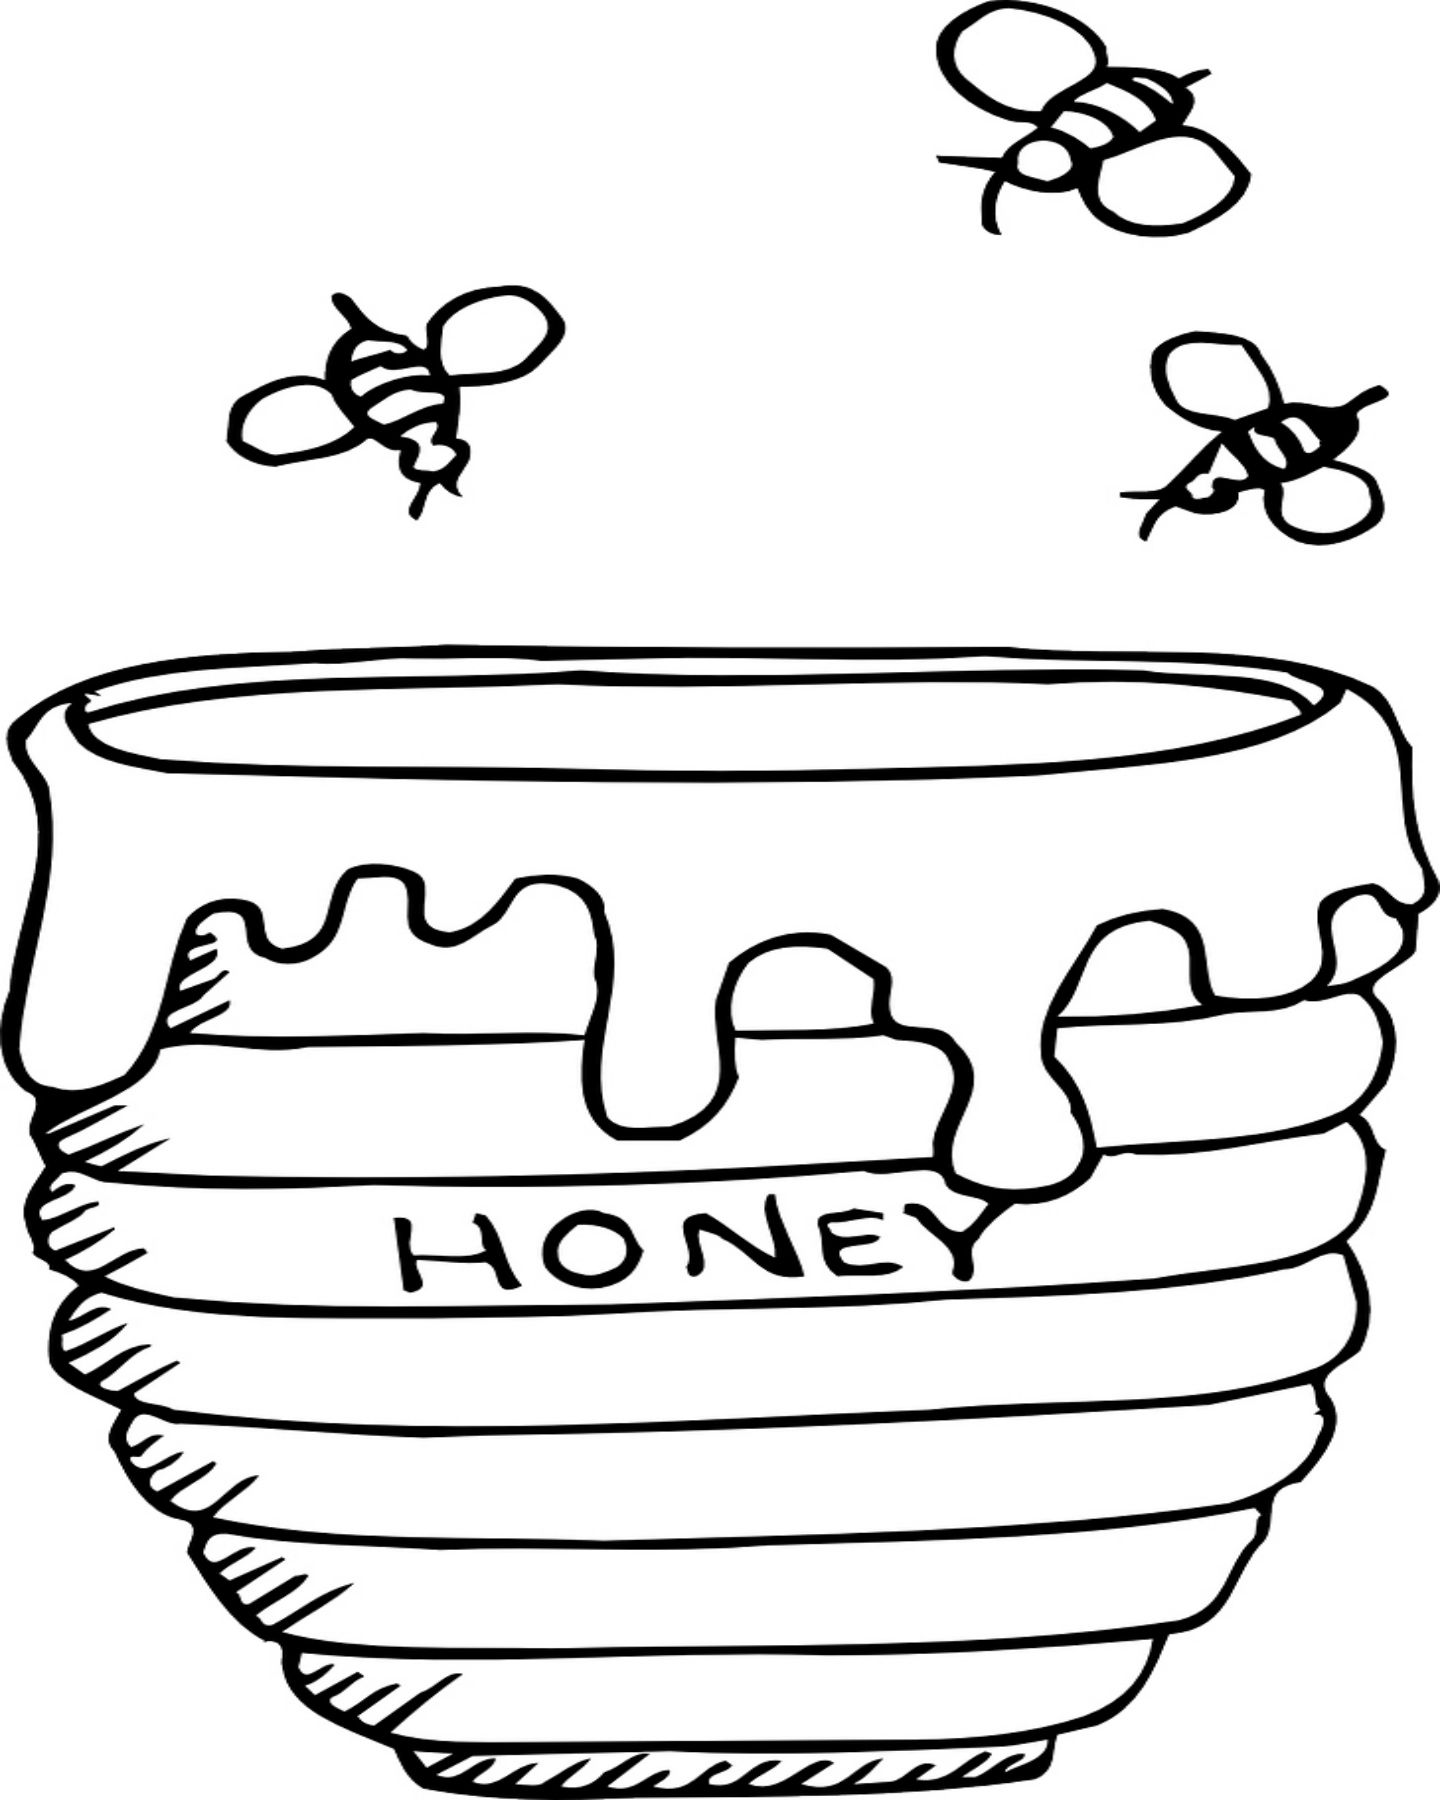 Tranh để mau con ong và phụ mật